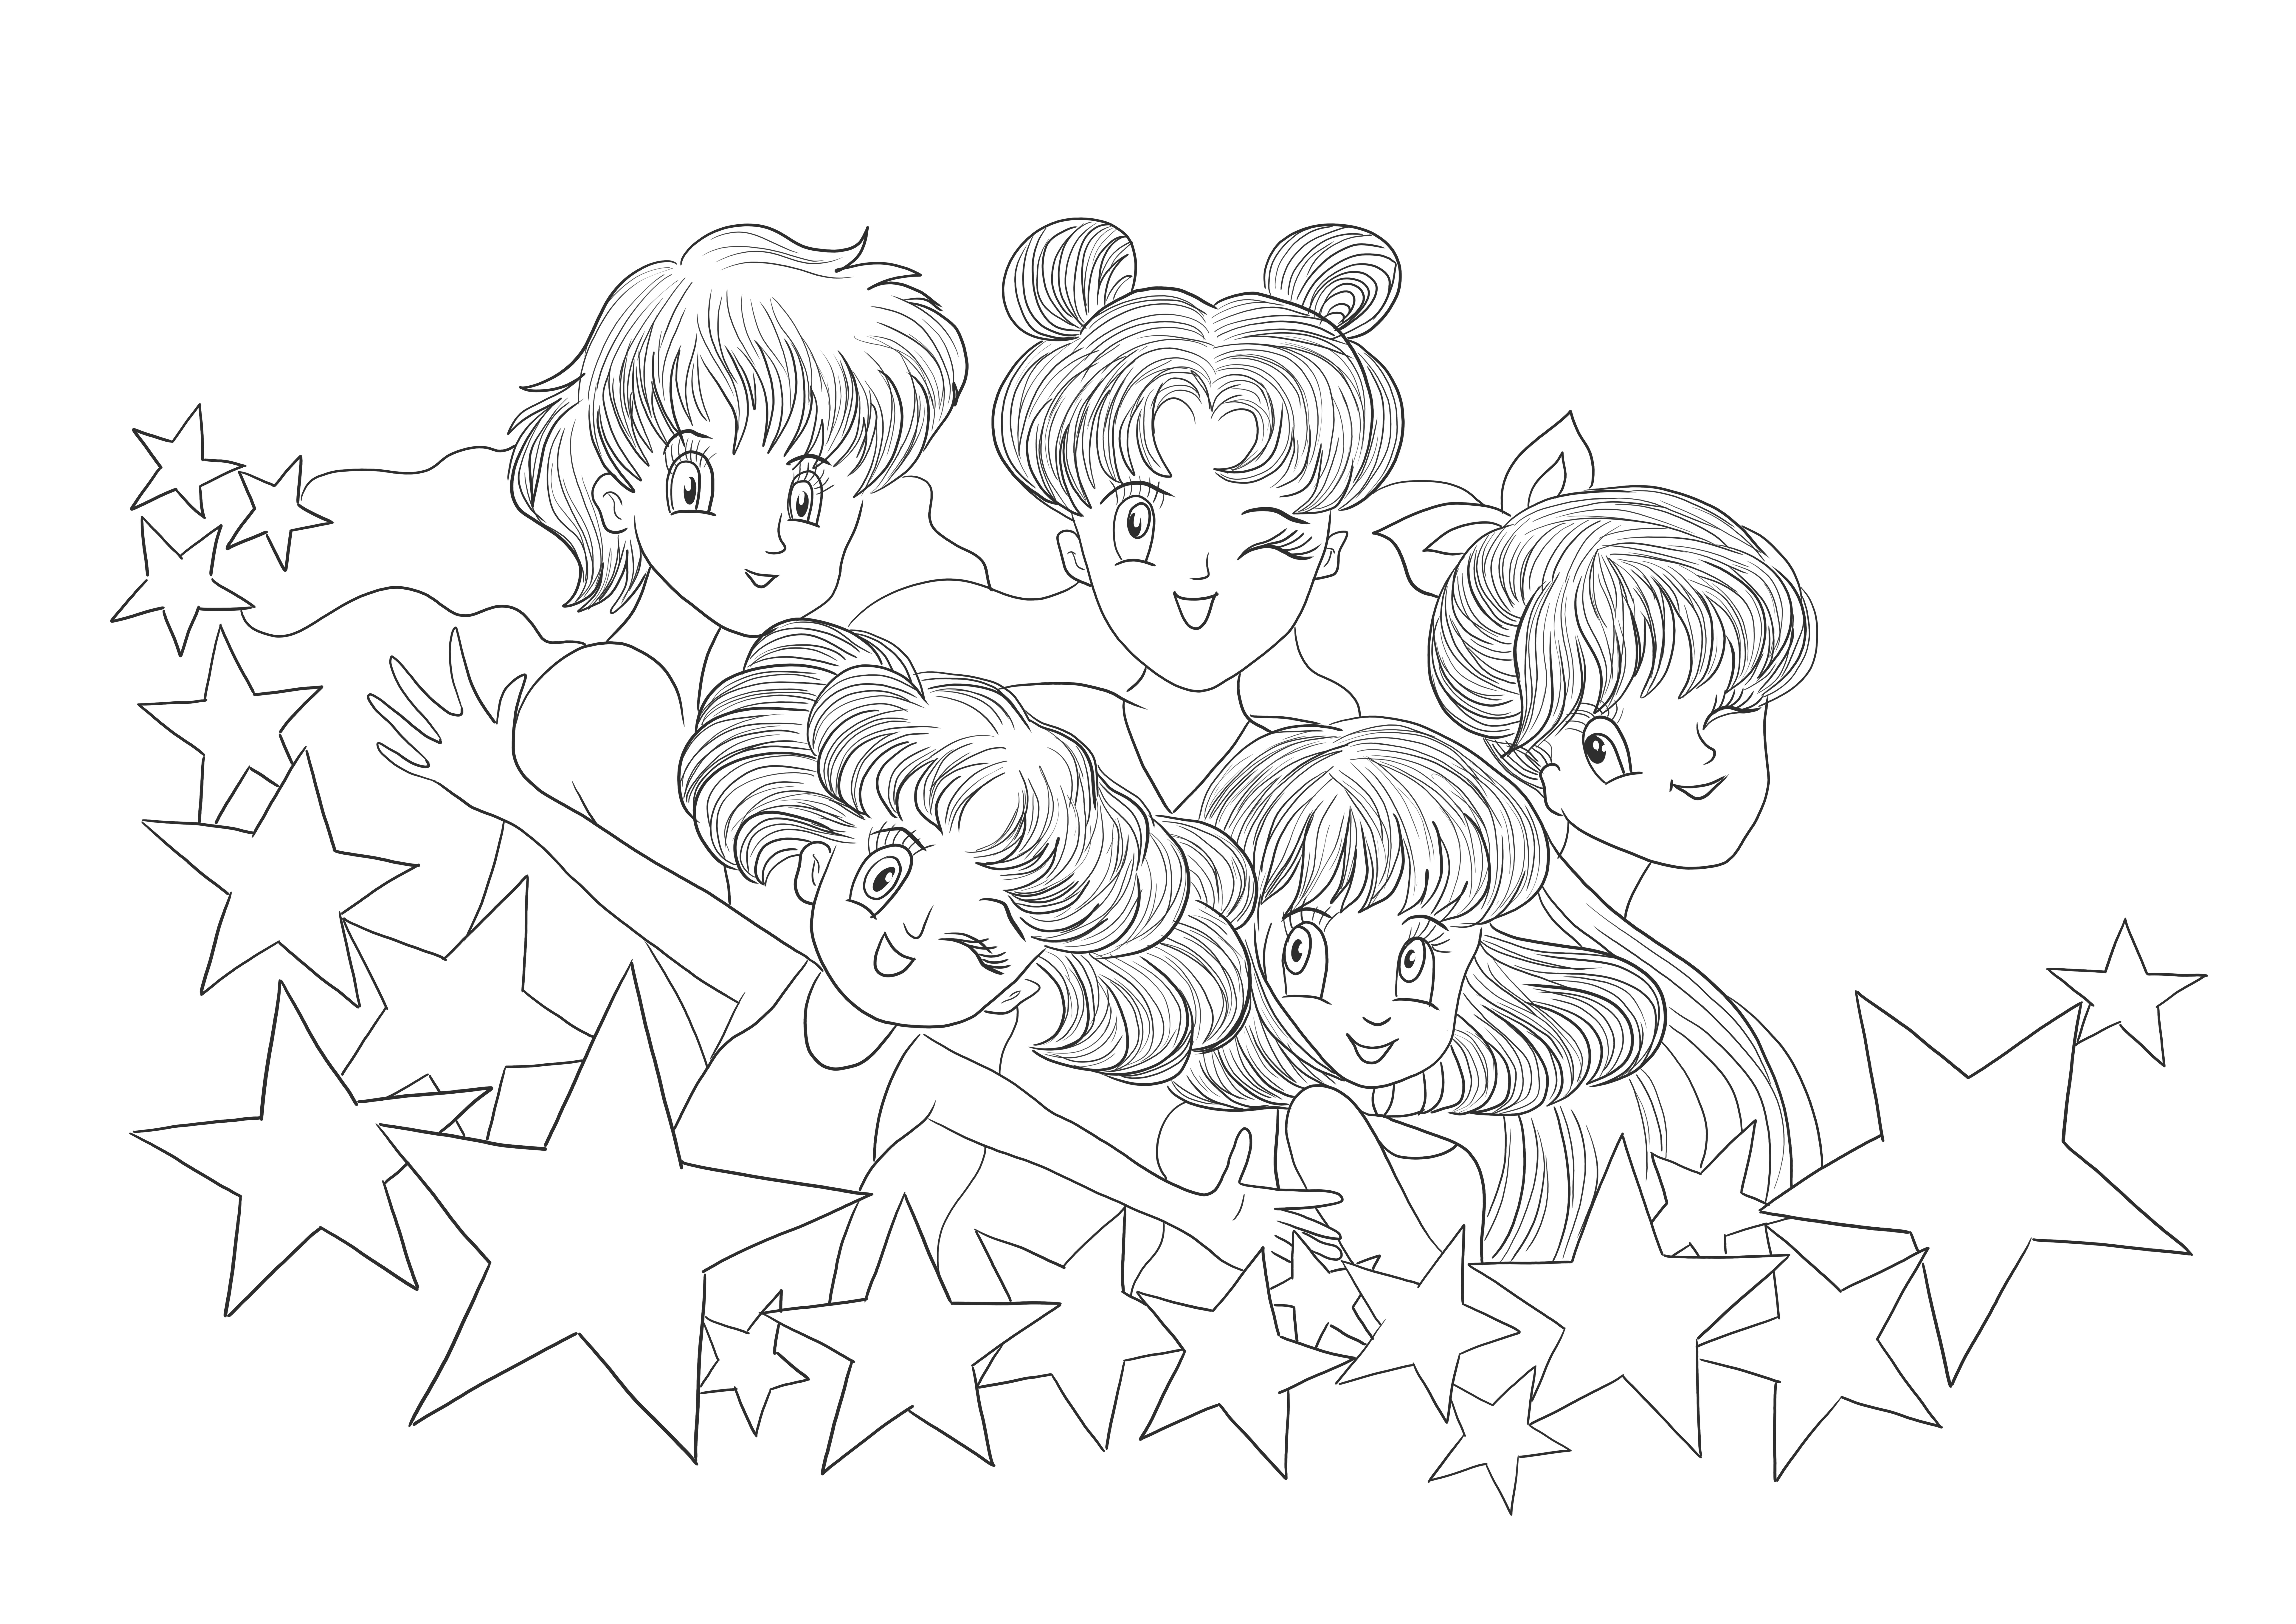 Imagini imprimabile gratuite de Sailor Moon pentru descărcare și imprimare pentru ca copiii să le coloreze.